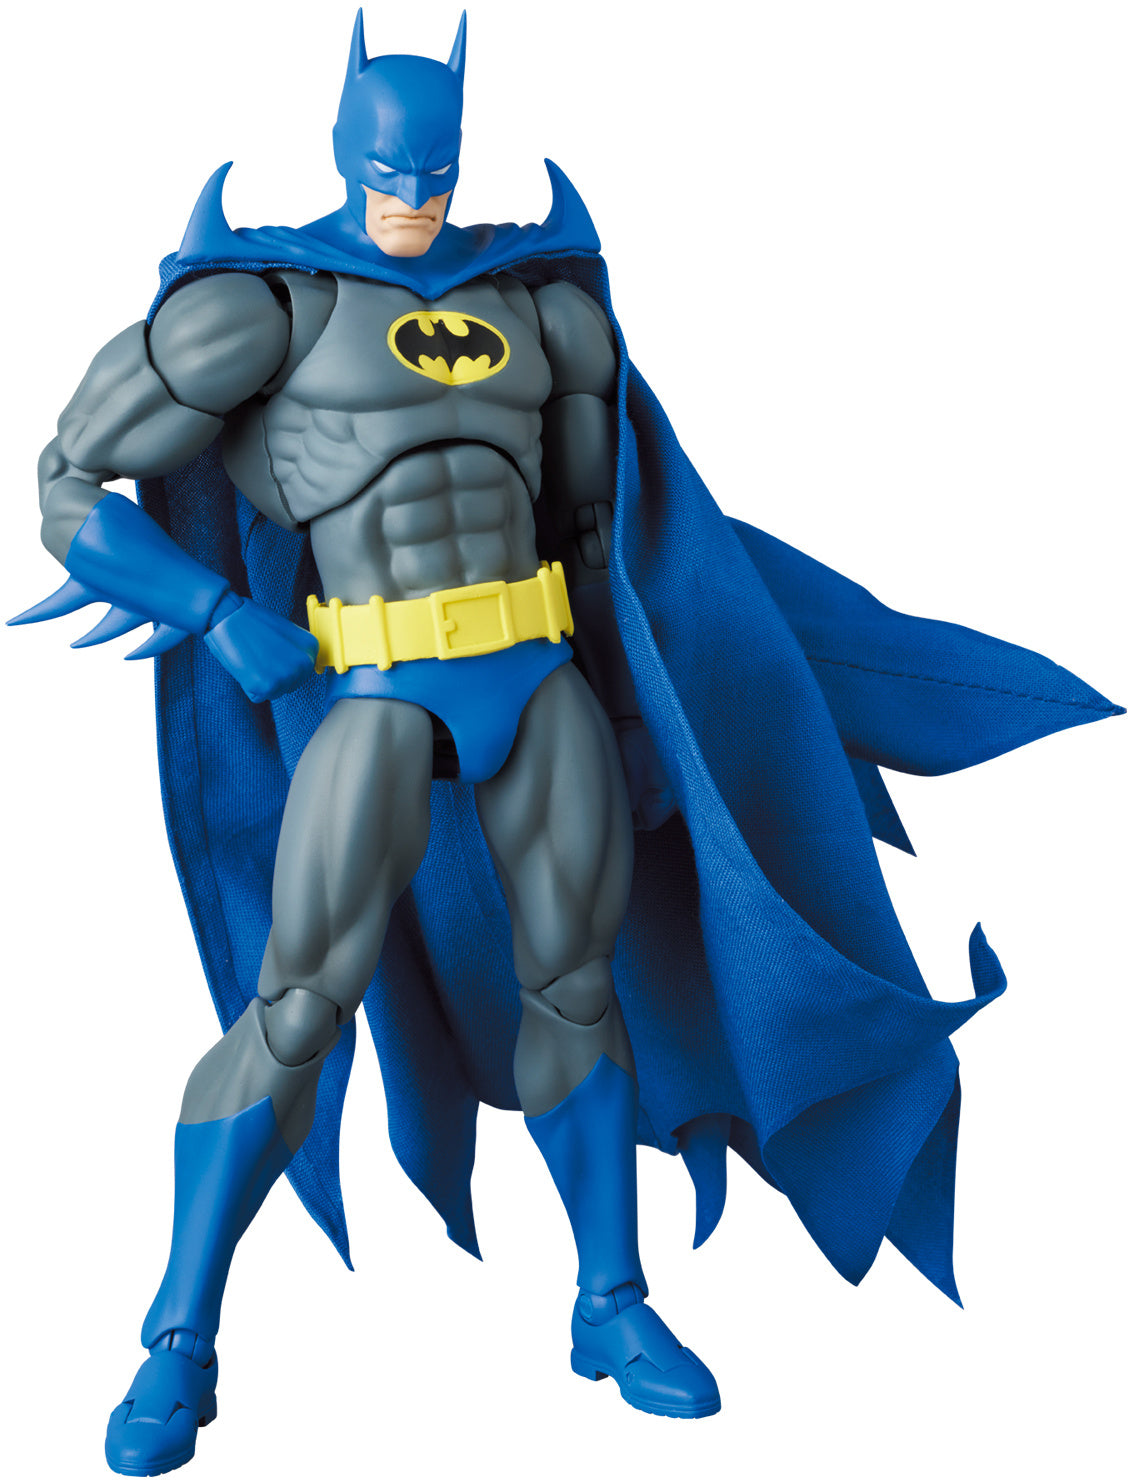 Medicom - MAFEX No. 215 - Batman: Knightfall - Knight Crusader Batman - Marvelous Toys